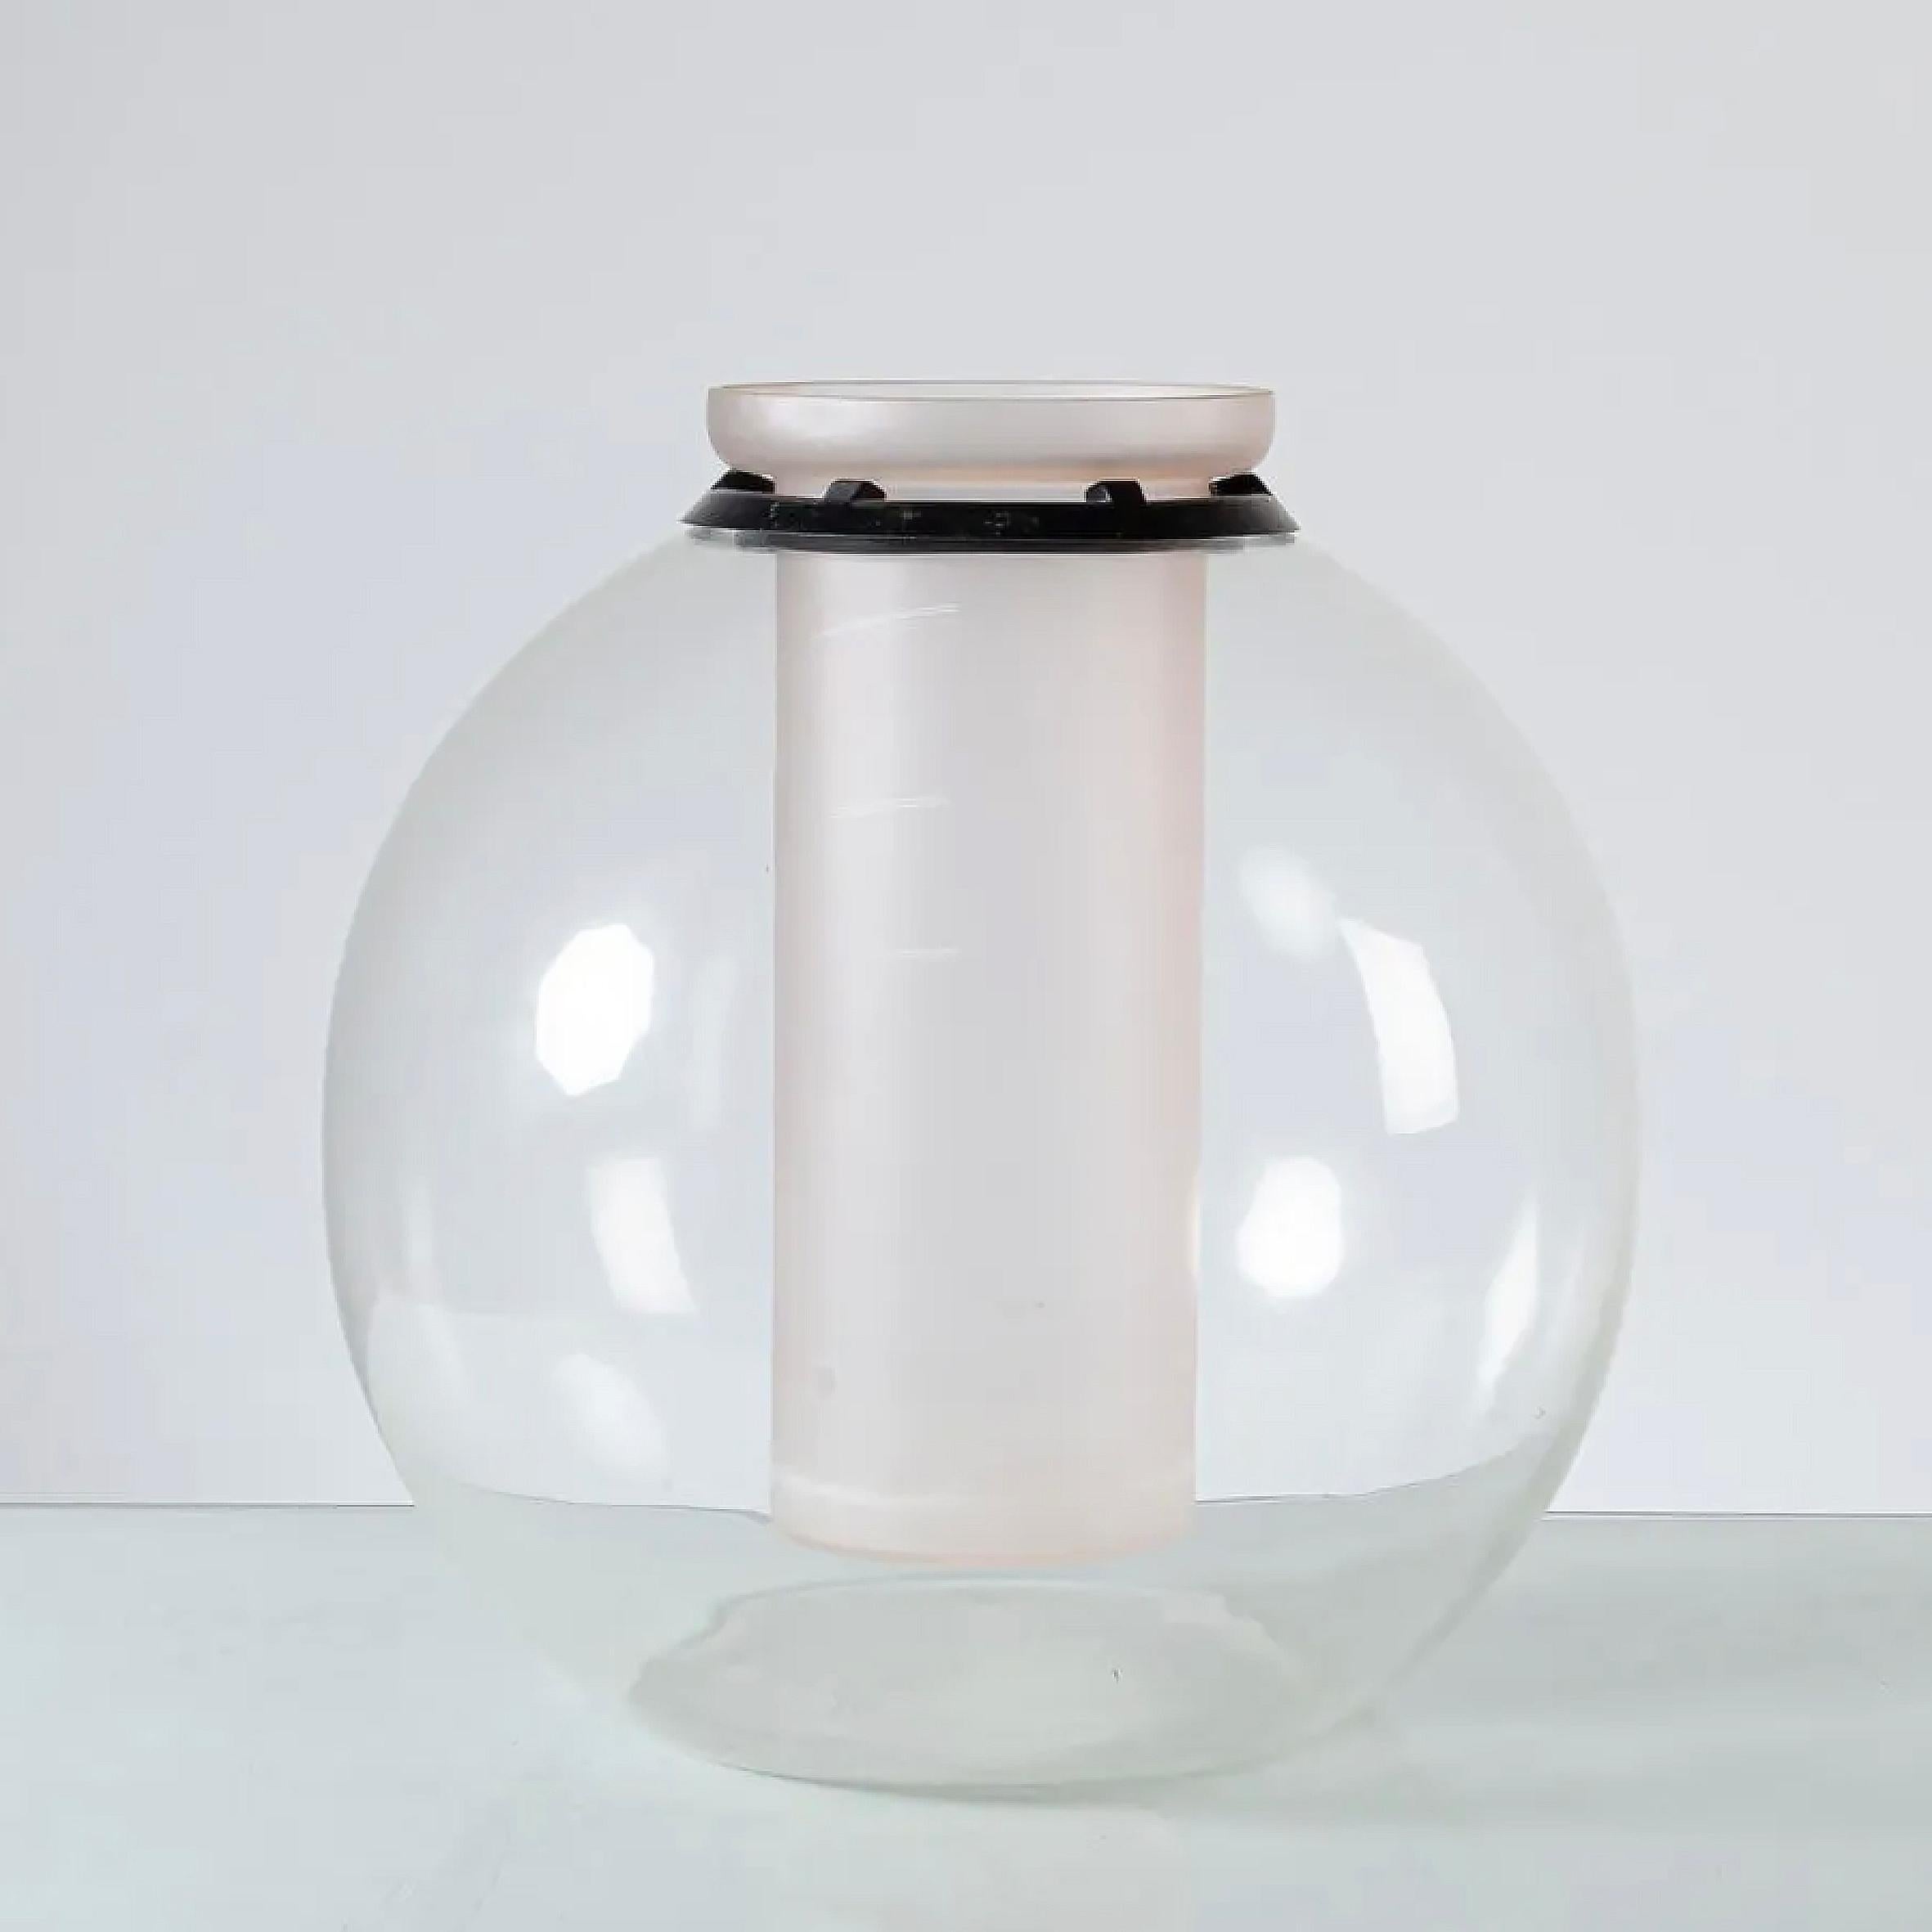 Gianfranco Frattini (1926-2004)

Sfera

Eine Vase aus Glas und Kristall.
Die kugelförmige Vase aus klarem Kristall ist mit einem Blumenbehälter aus Milchglas versehen, der von einem schwarzen Gummiring geschützt wird. 
Hergestellt von Progetti,